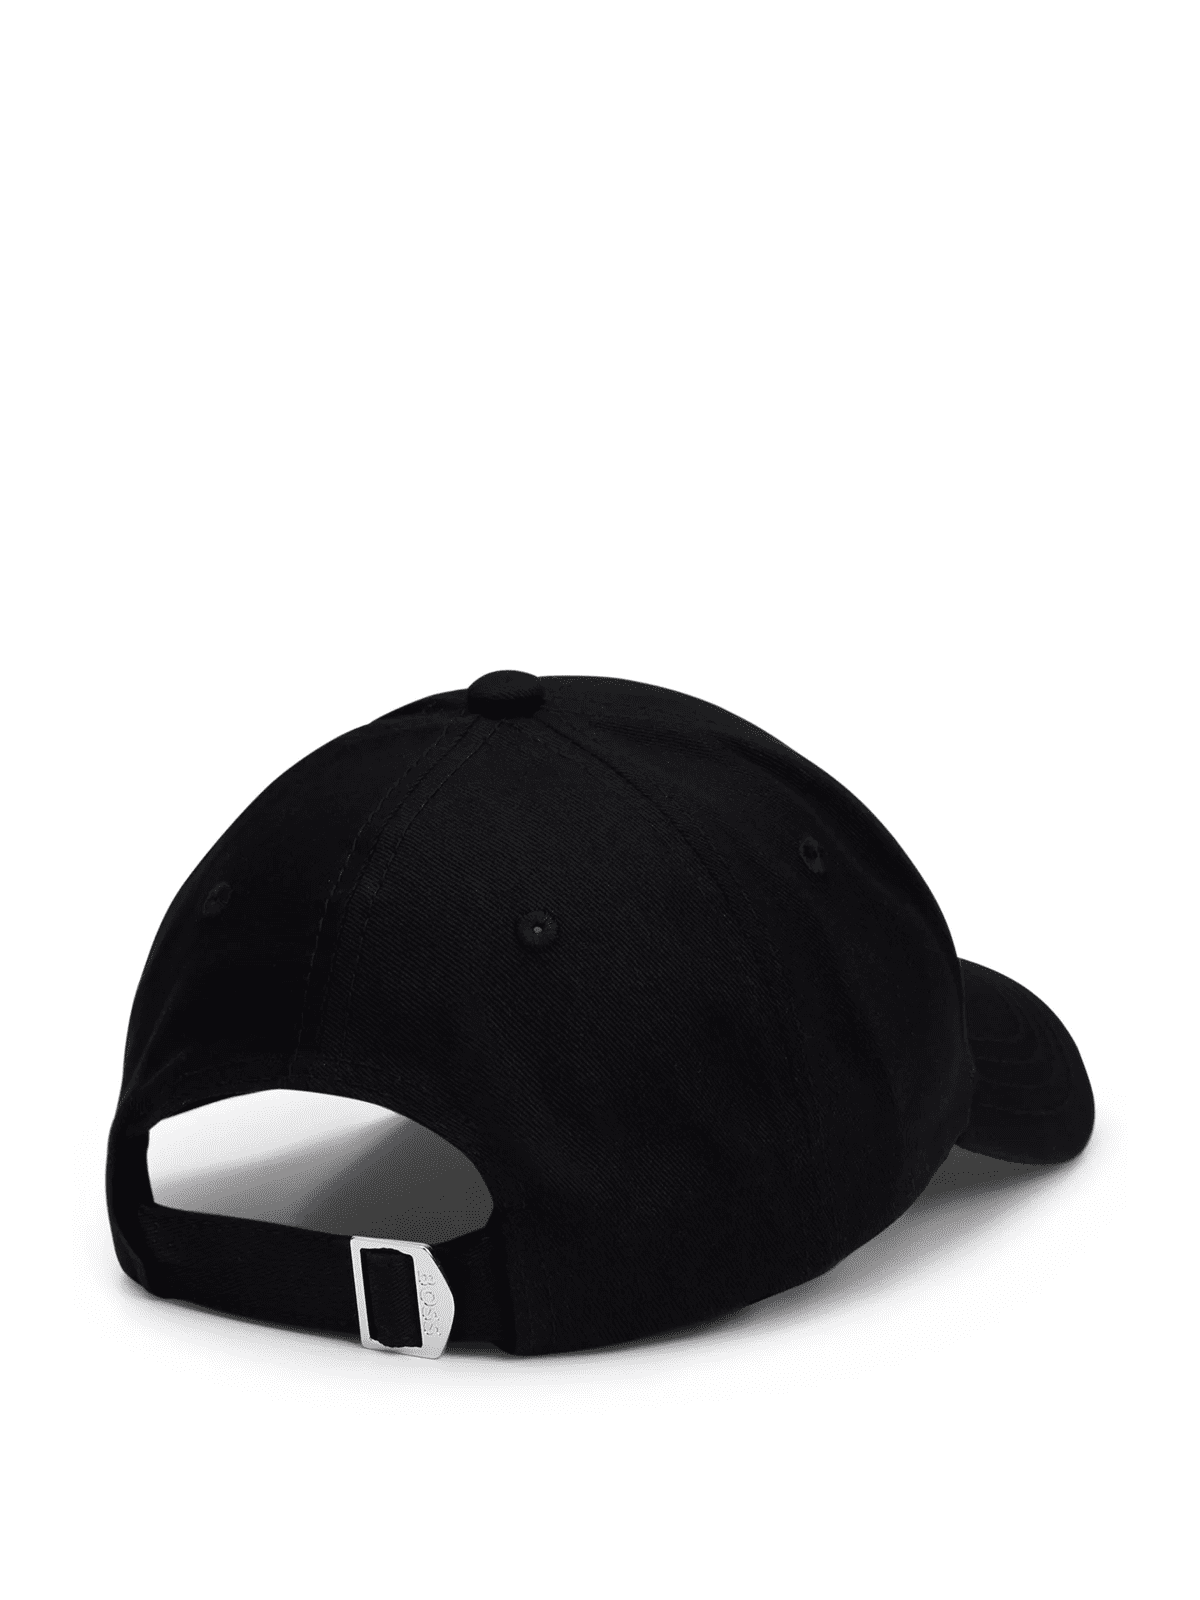 ZED - Black cap onesize